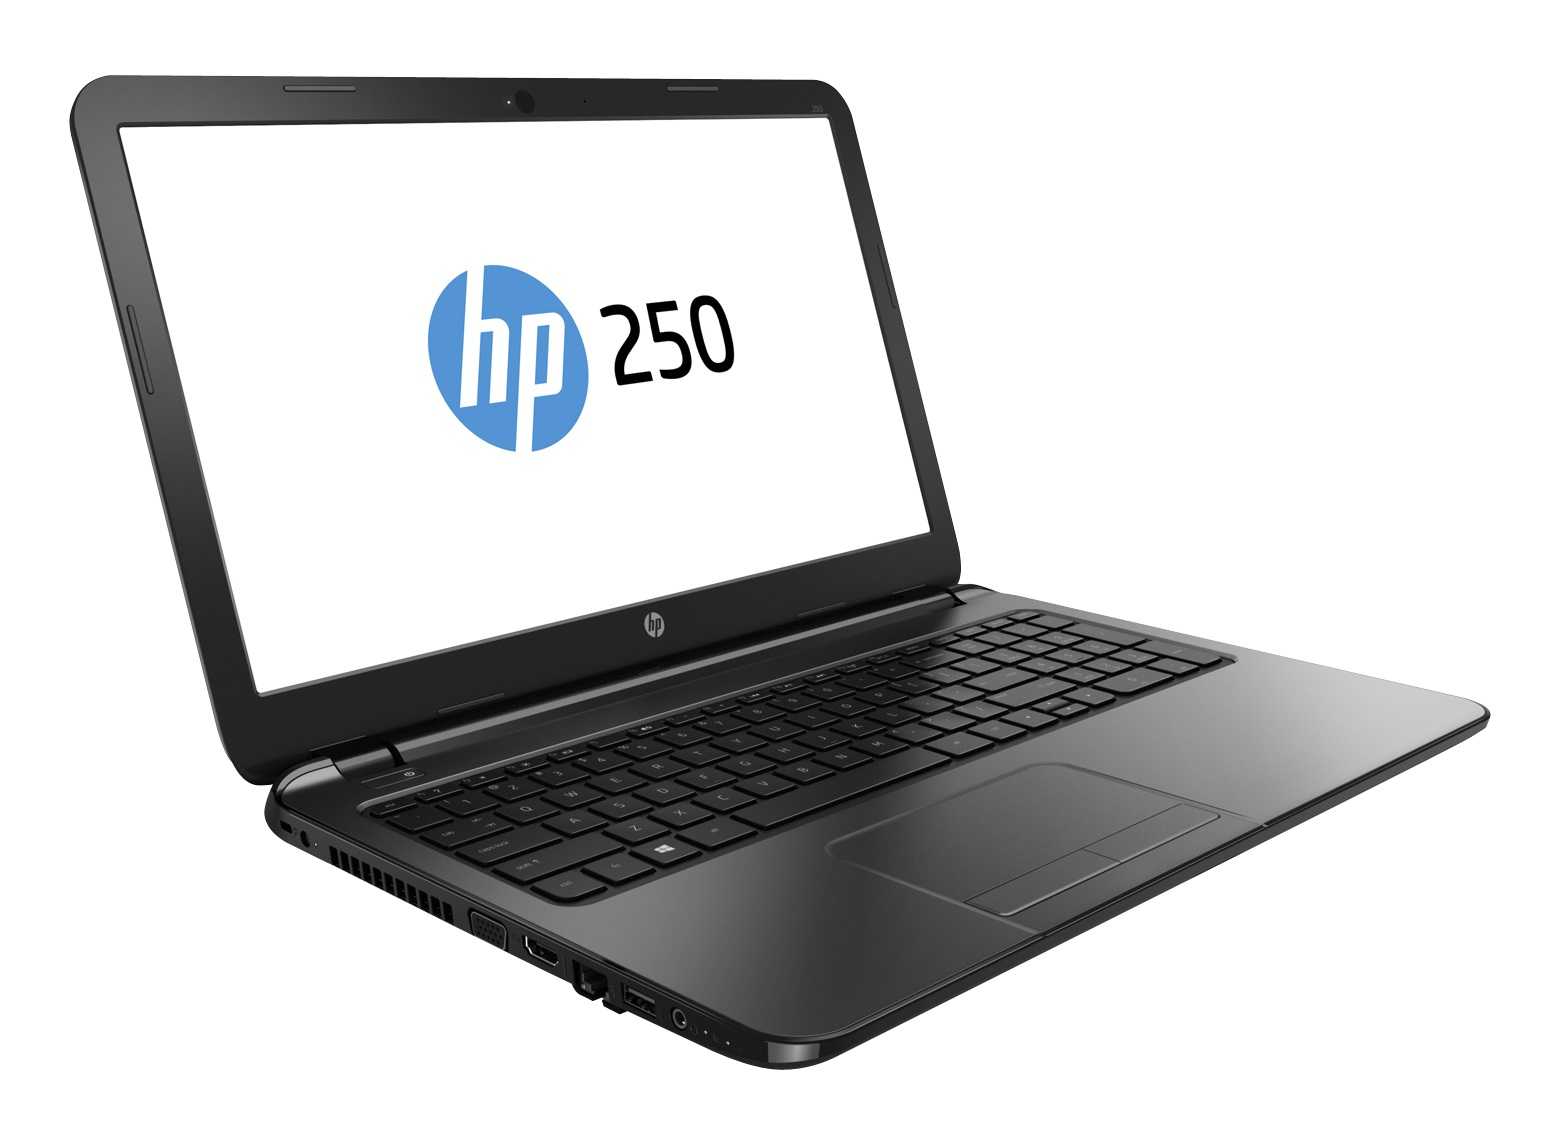 HP 250 G7 - короткий но максимально информативный обзор Для большего удобства добавлены характеристики отзывы и видео